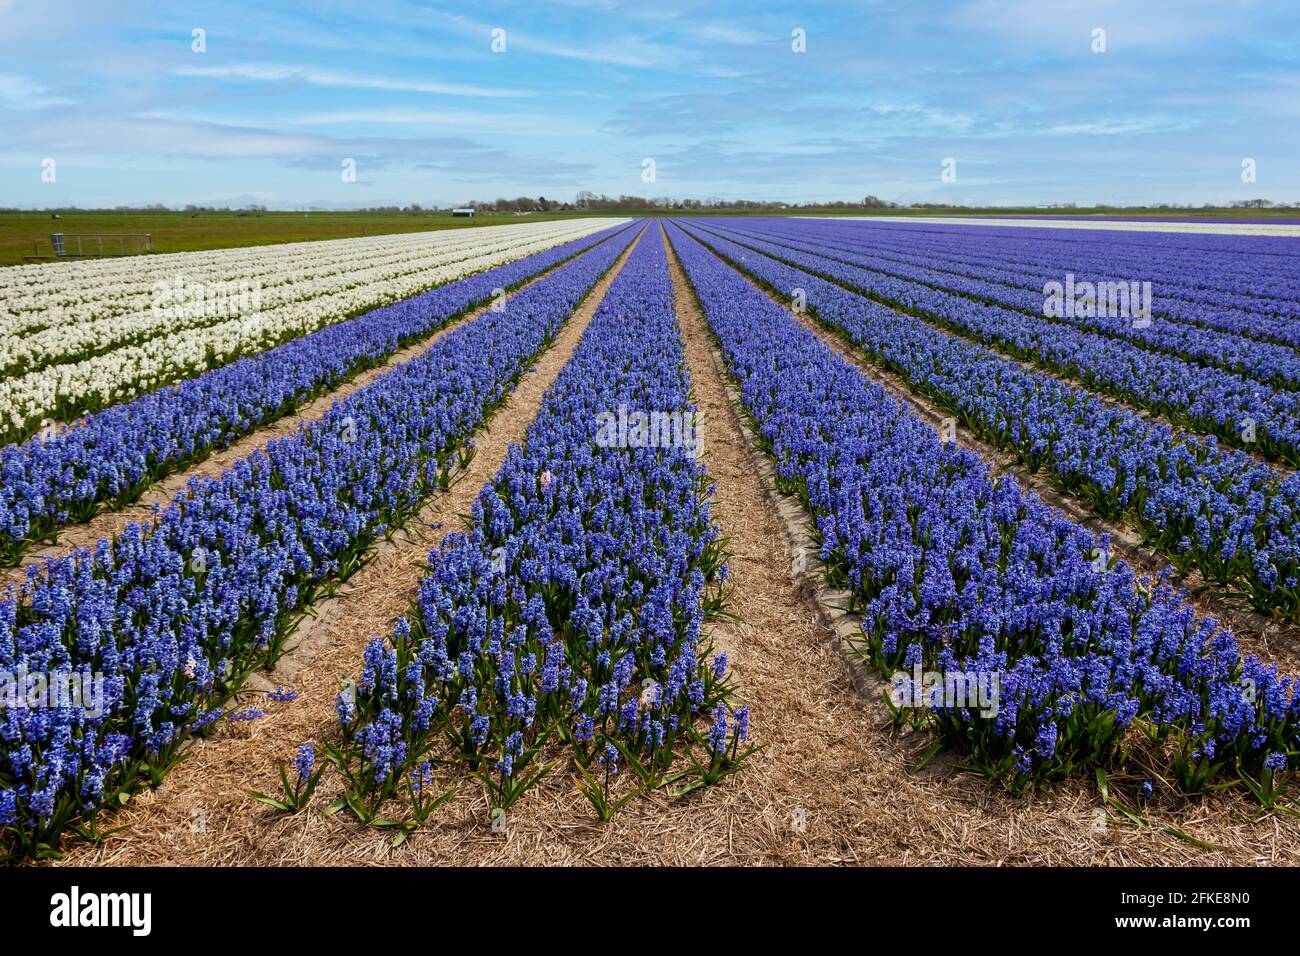 Campi pieni di giacinti dai colori vivaci e profumi inebrianti, provincia dell'Olanda del Nord, Paesi Bassi Foto Stock